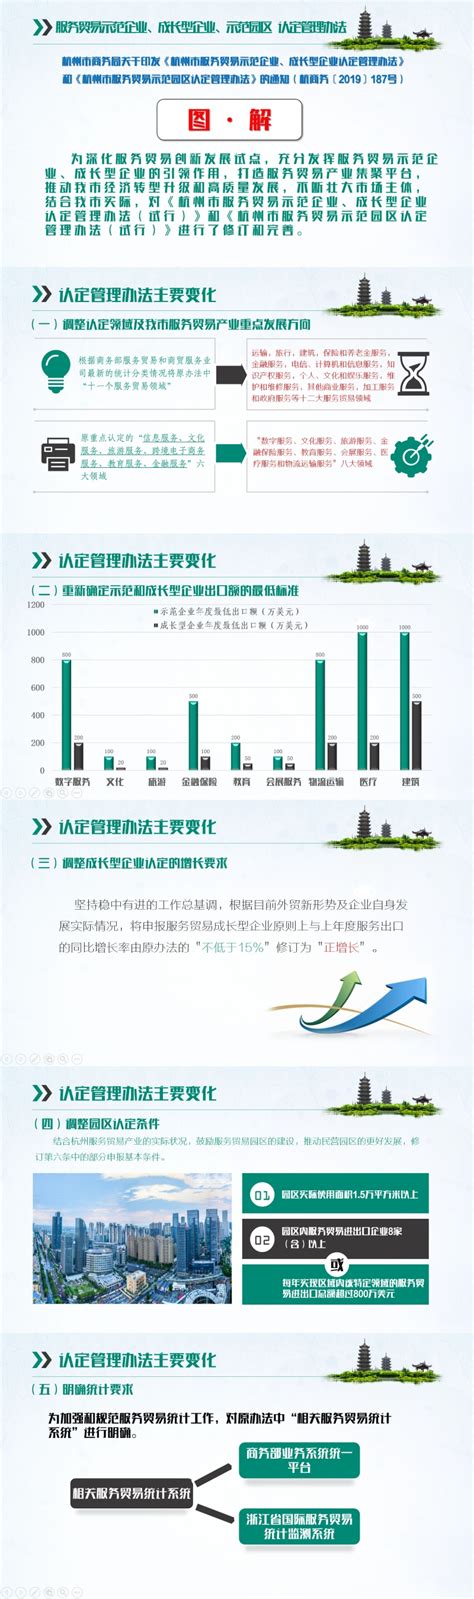 《杭州市服务贸易示范企业、成长型企业认定管理办法》和《杭州市服务贸易示范园区认定管理办法》图解